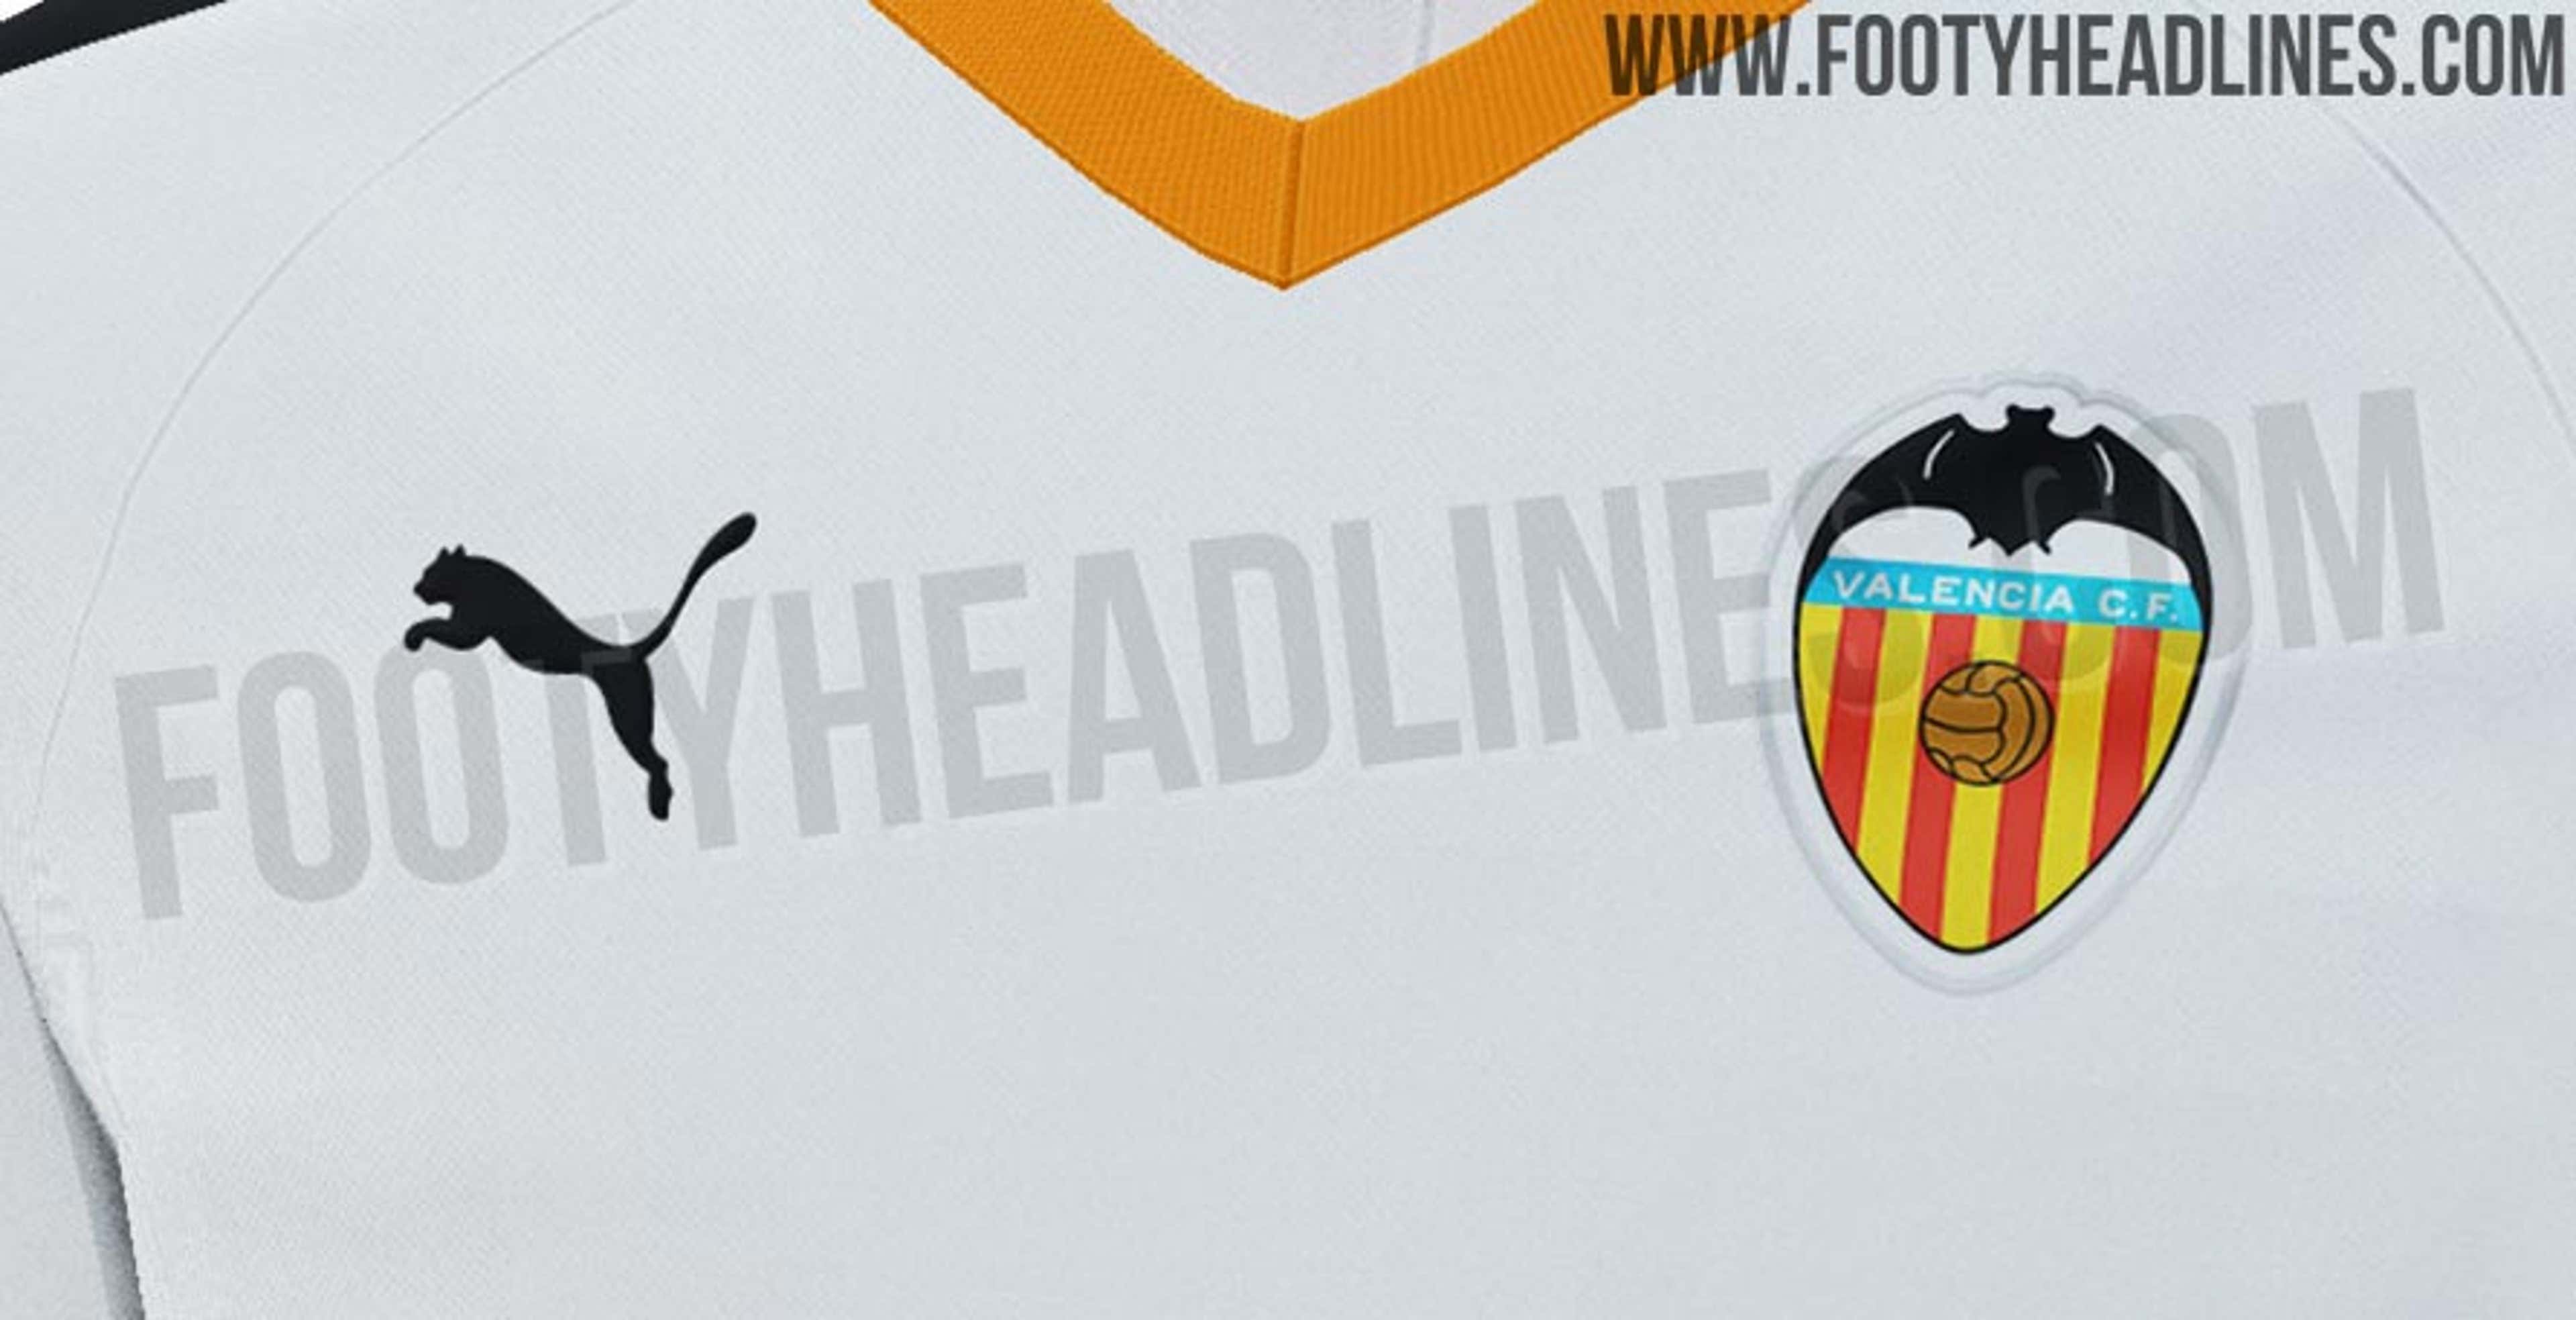 La nueva camiseta del Valencia cambia a la marca Puma | Espana